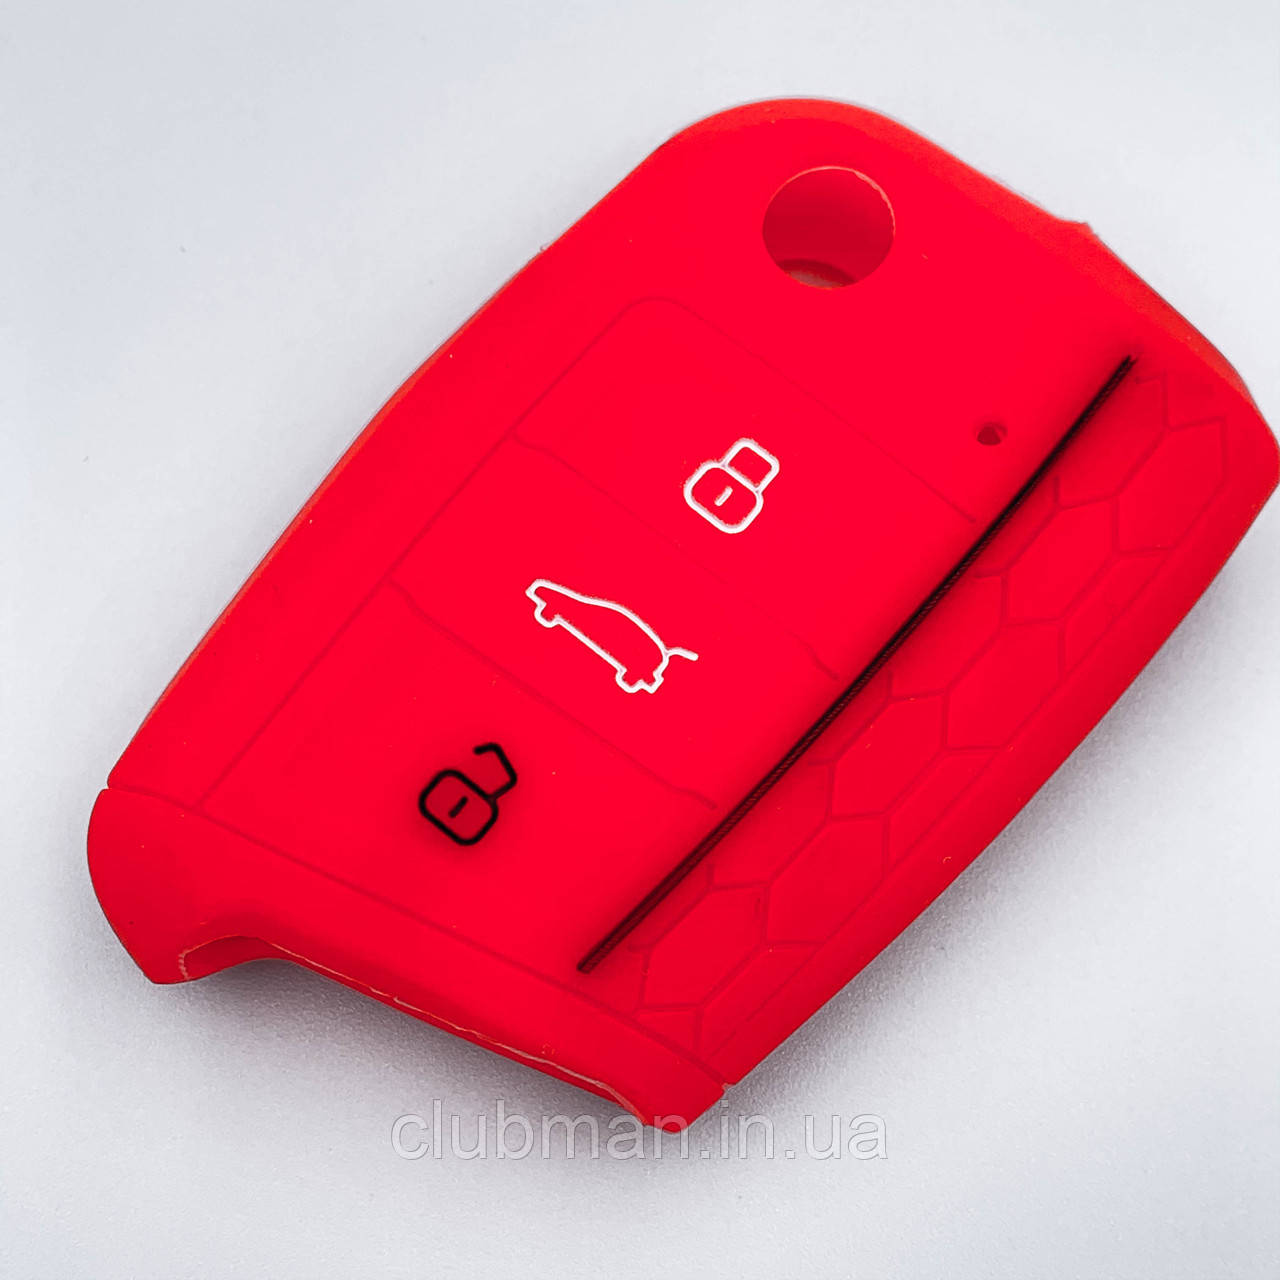 Силіконовий чохол для ключа VW Golf 7, Tiguan 2, Skoda Octavia A7, Seat Leon, червоний